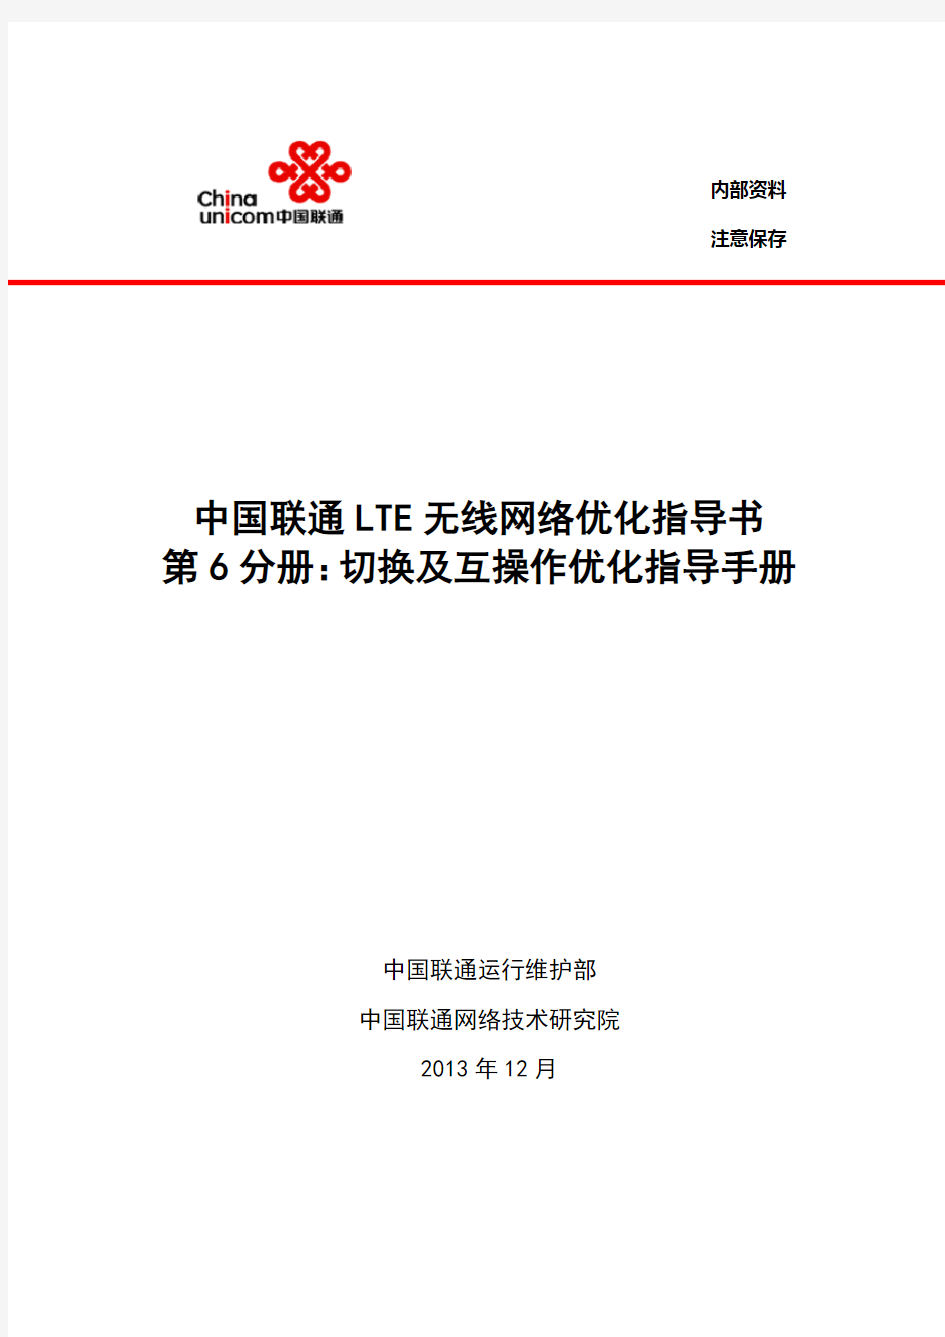 6-中国联通LTE无线网络优化指导书-切换及互操作优化指导手册